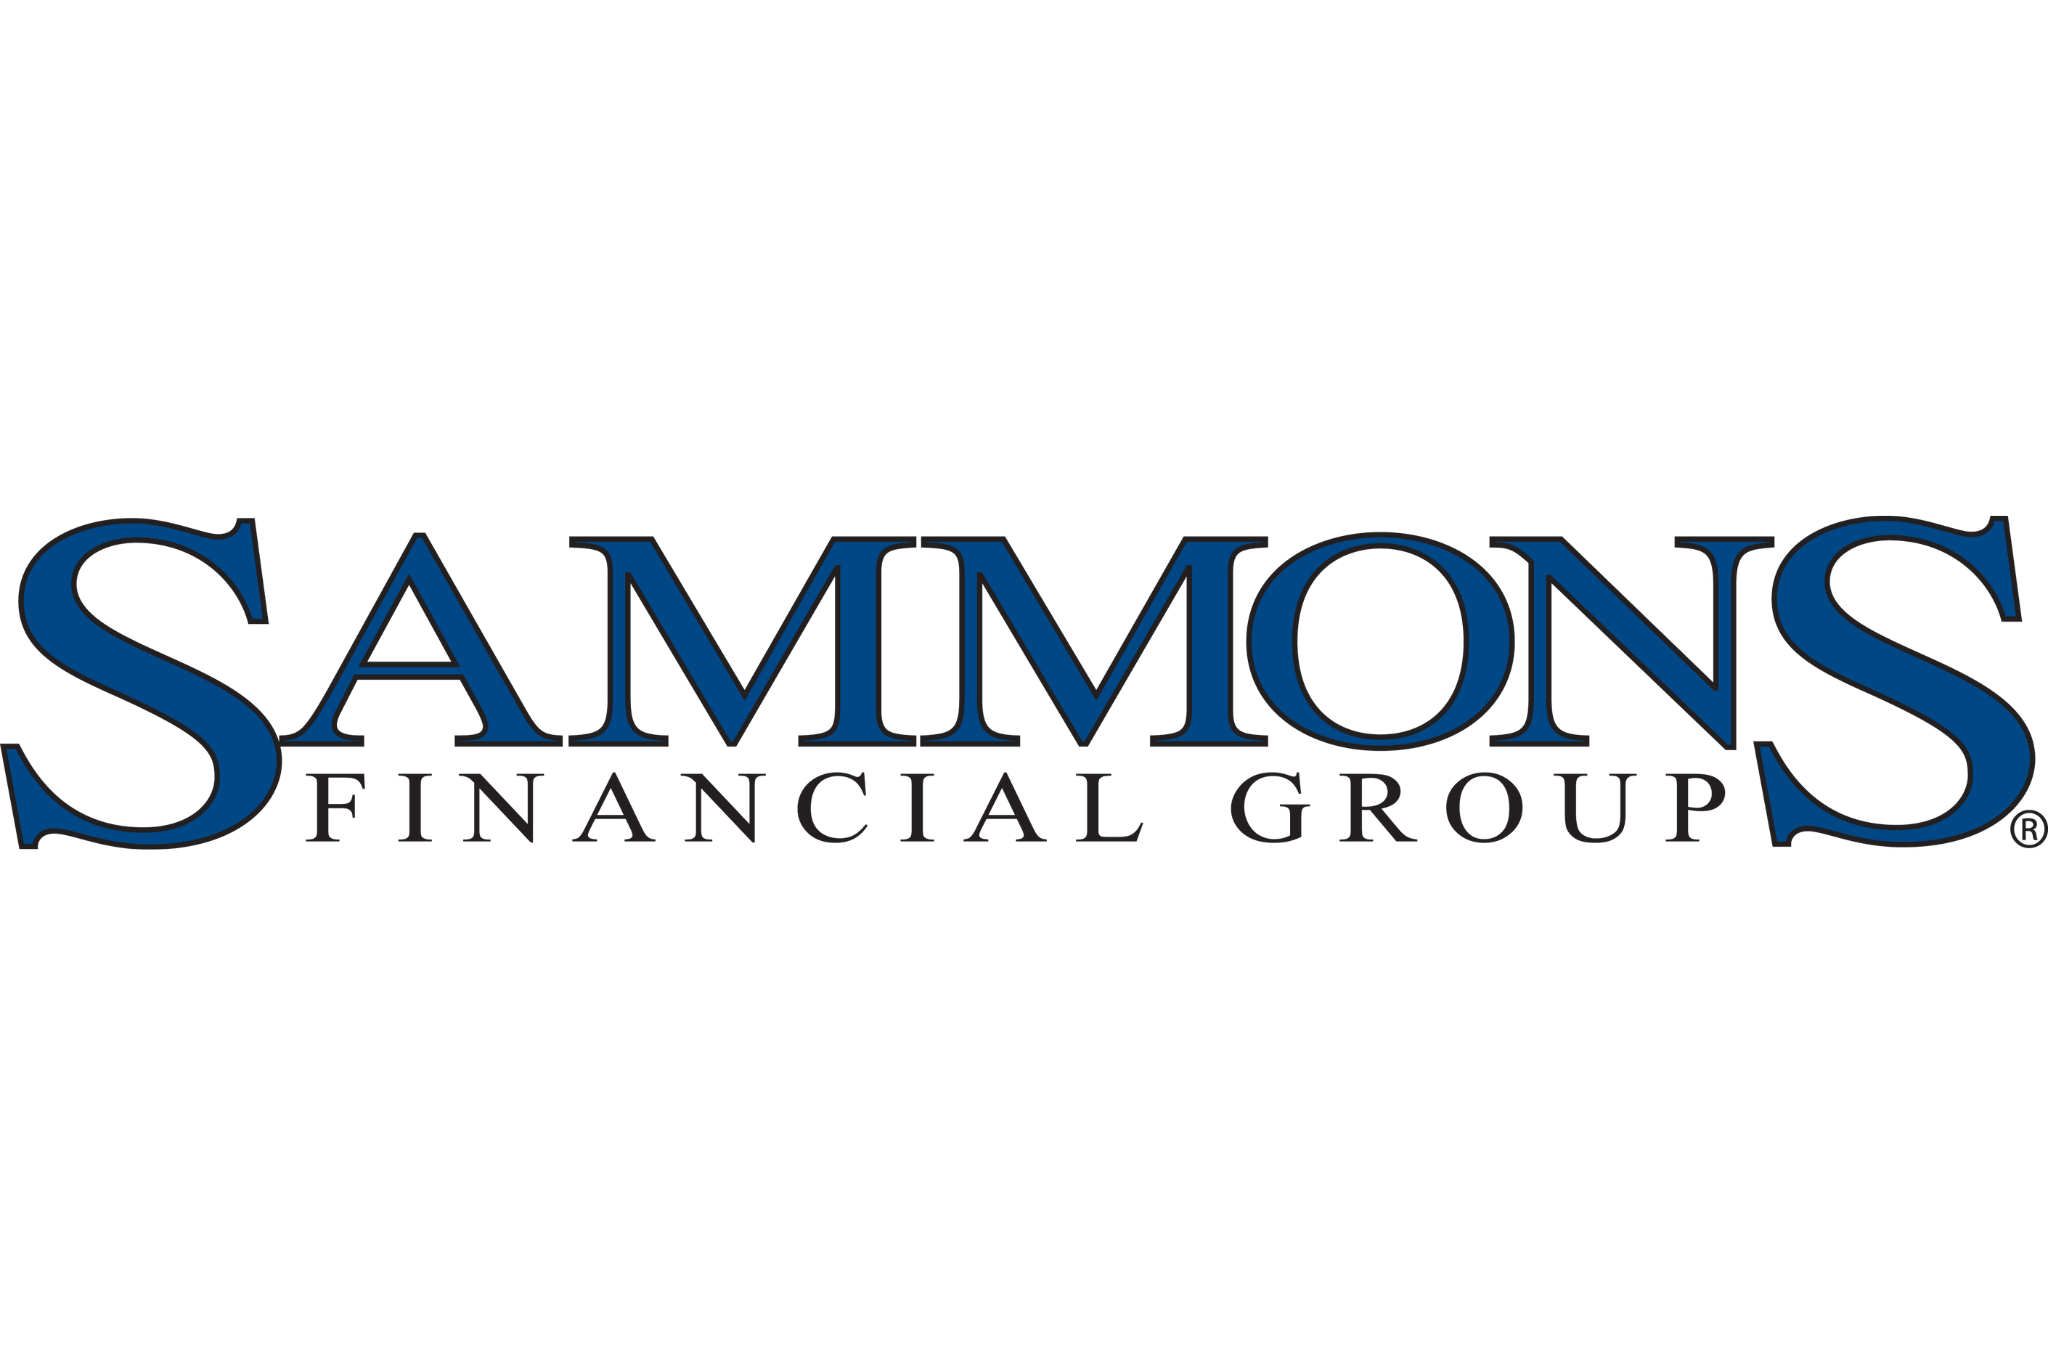 Sammons Logo